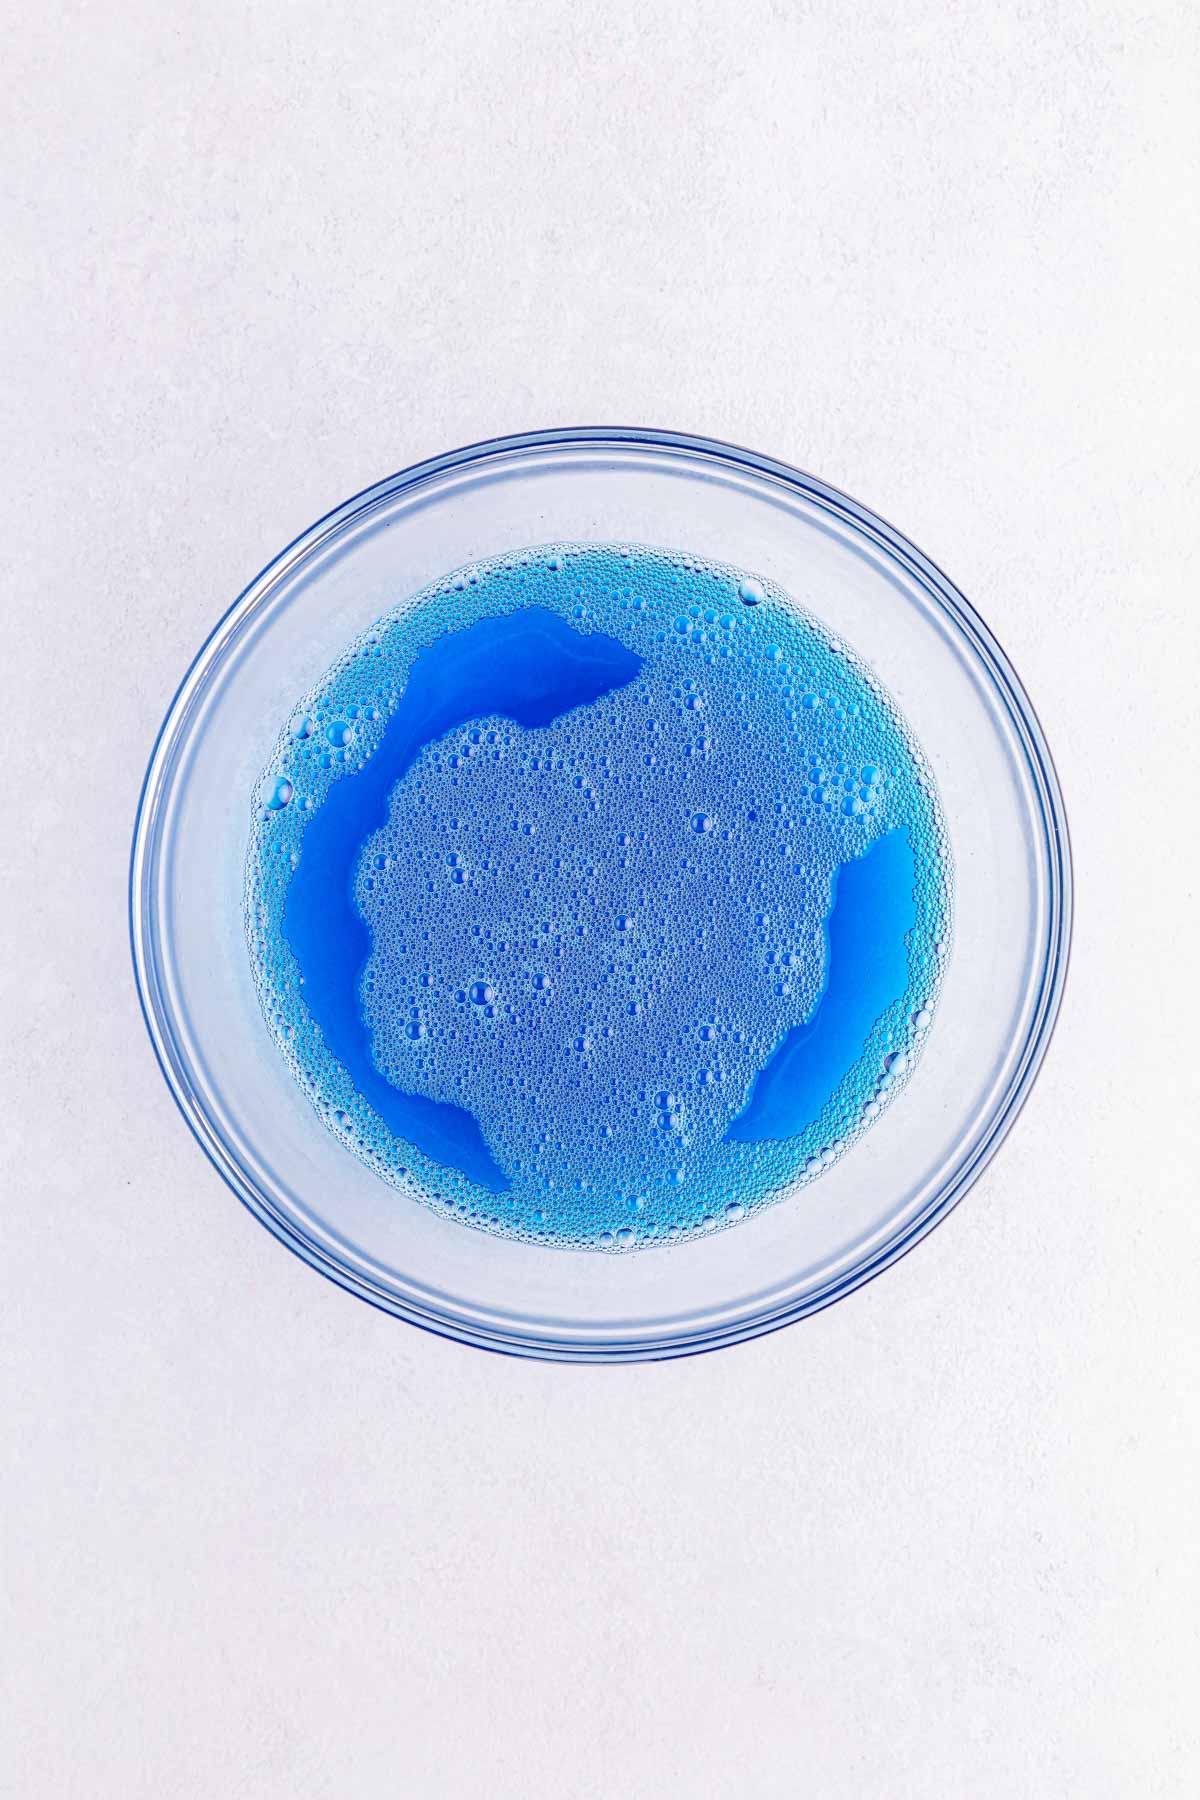 blue jello in a glass bowl